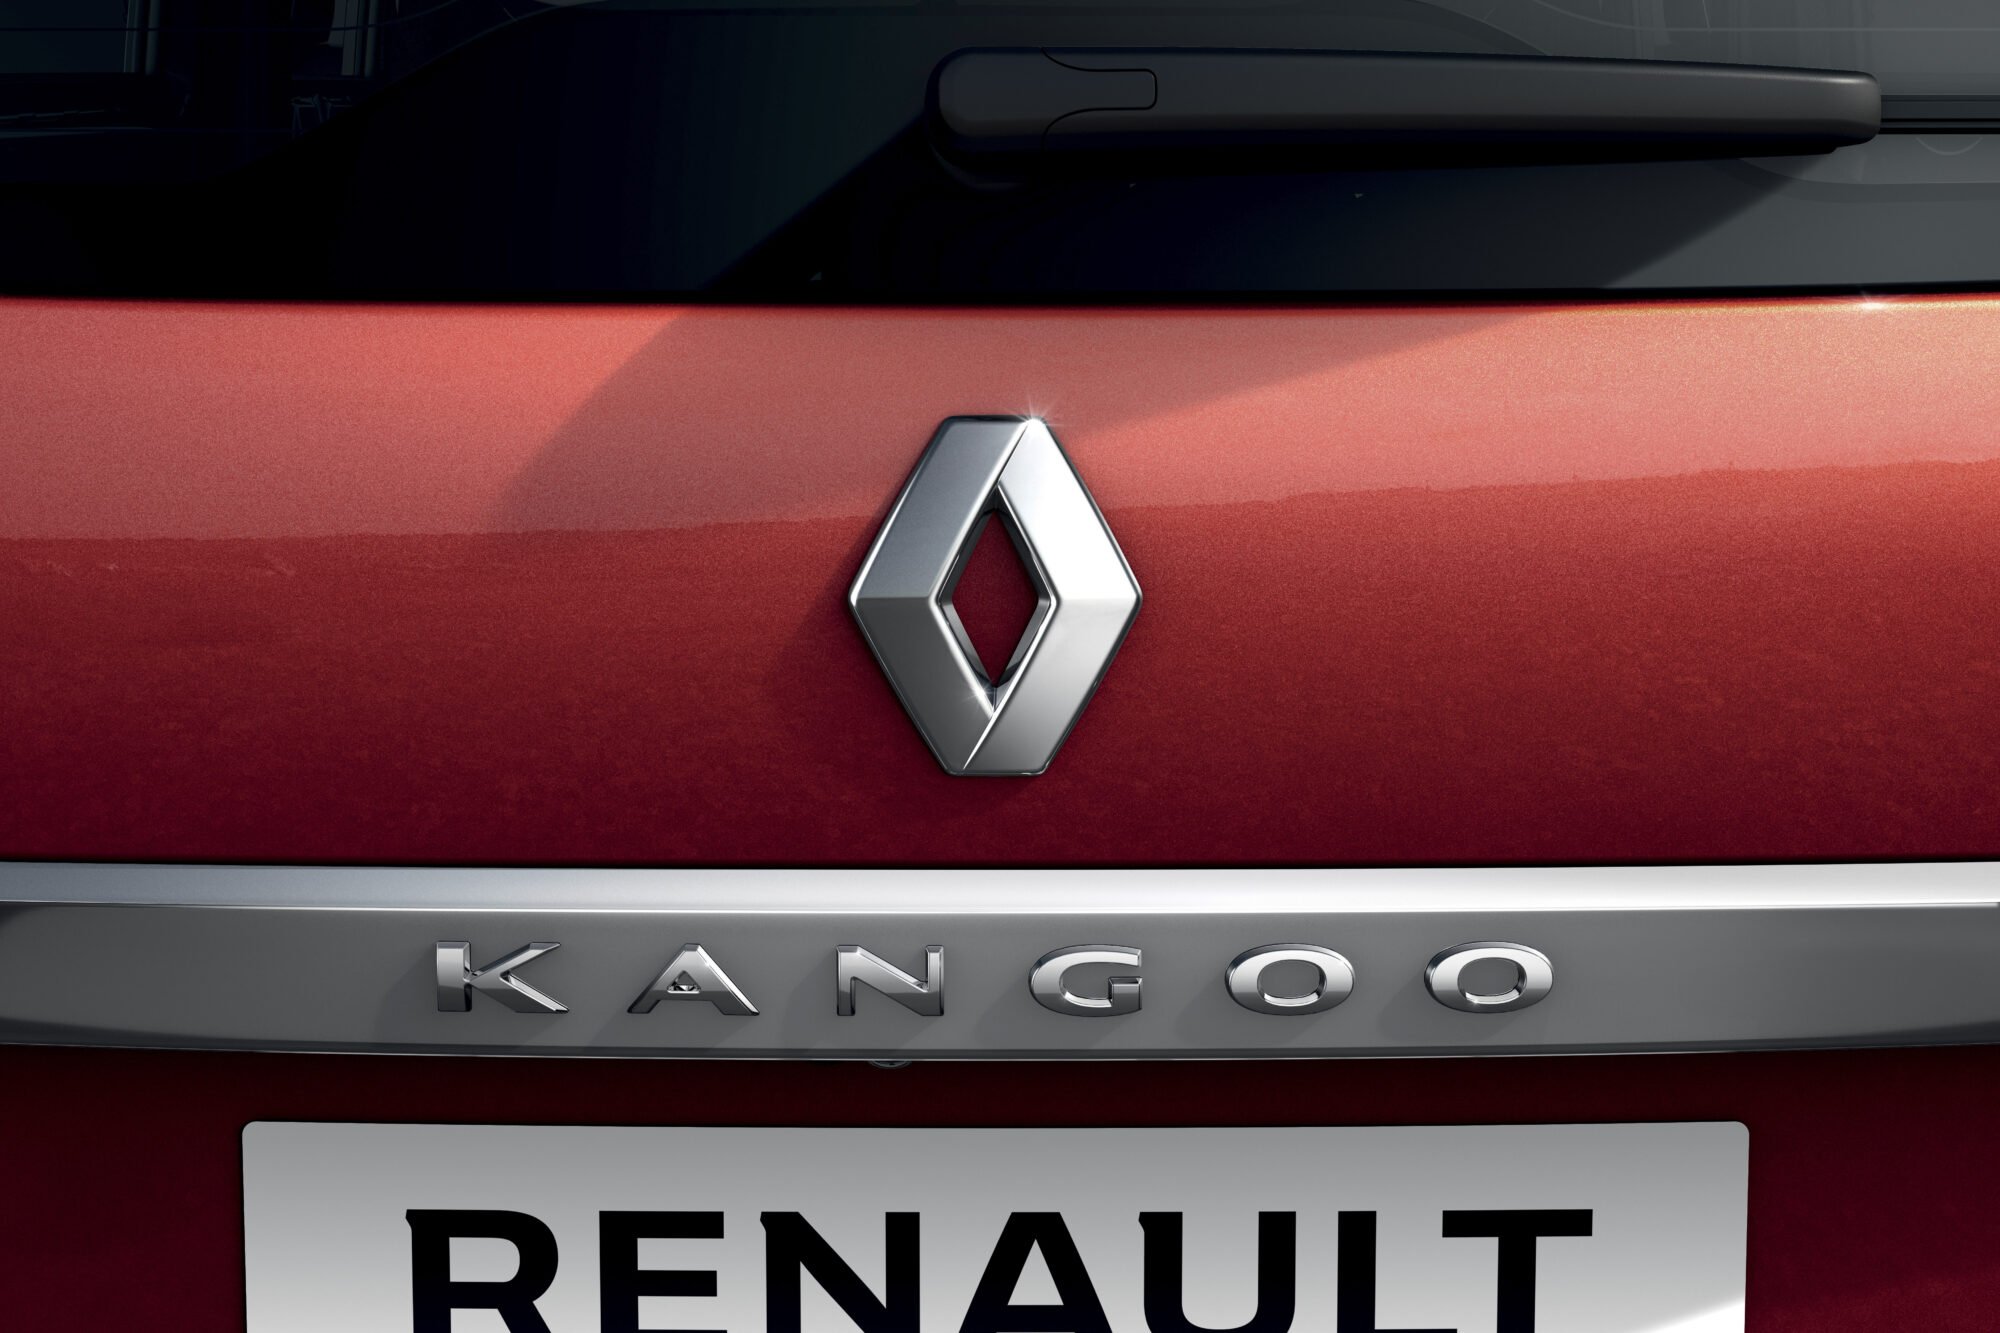 2021 - Nouveau Renault Kangoo - En studio